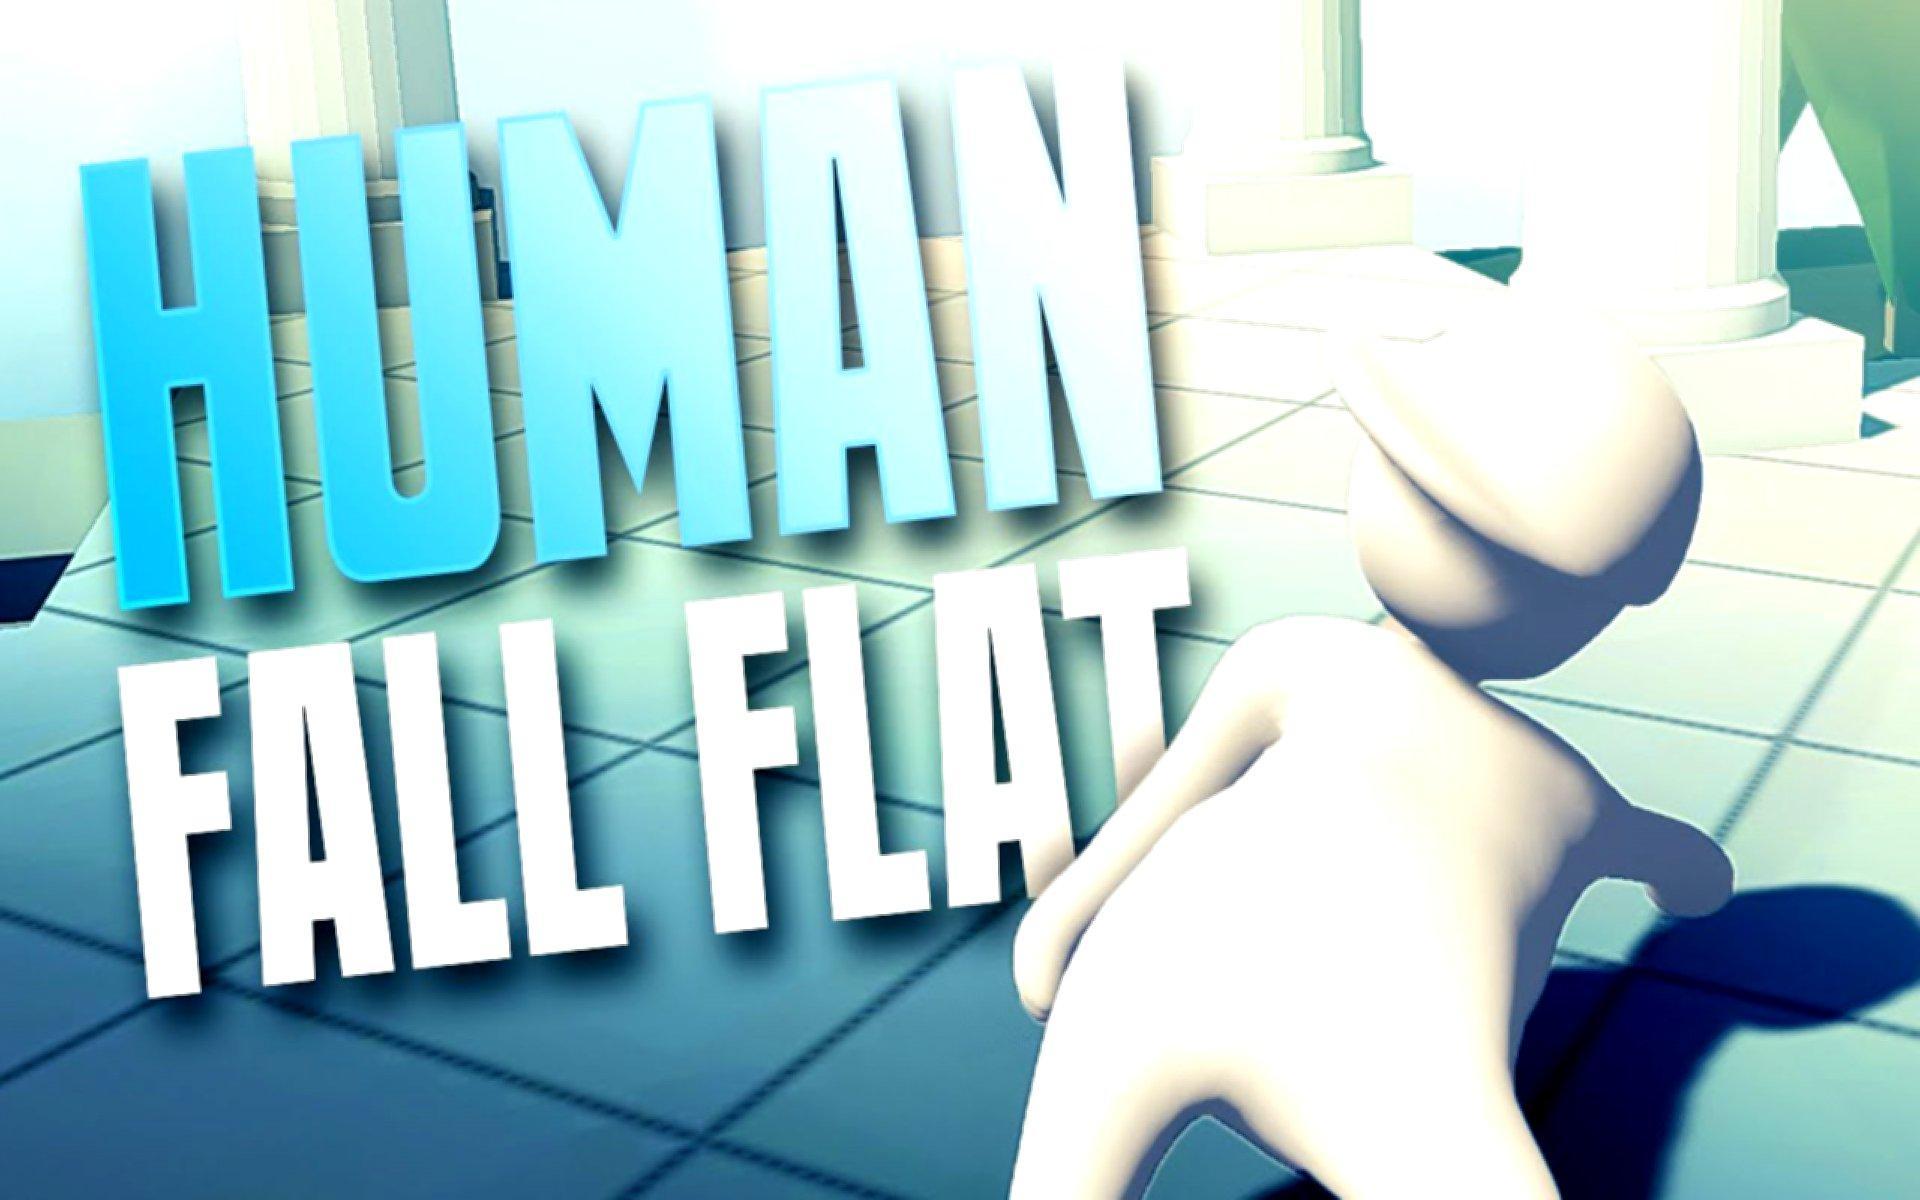 Хуман фулл. Игра Human Fall. Игра Fall Flat. Превью Human Fall. Human Fall Flat стрим.